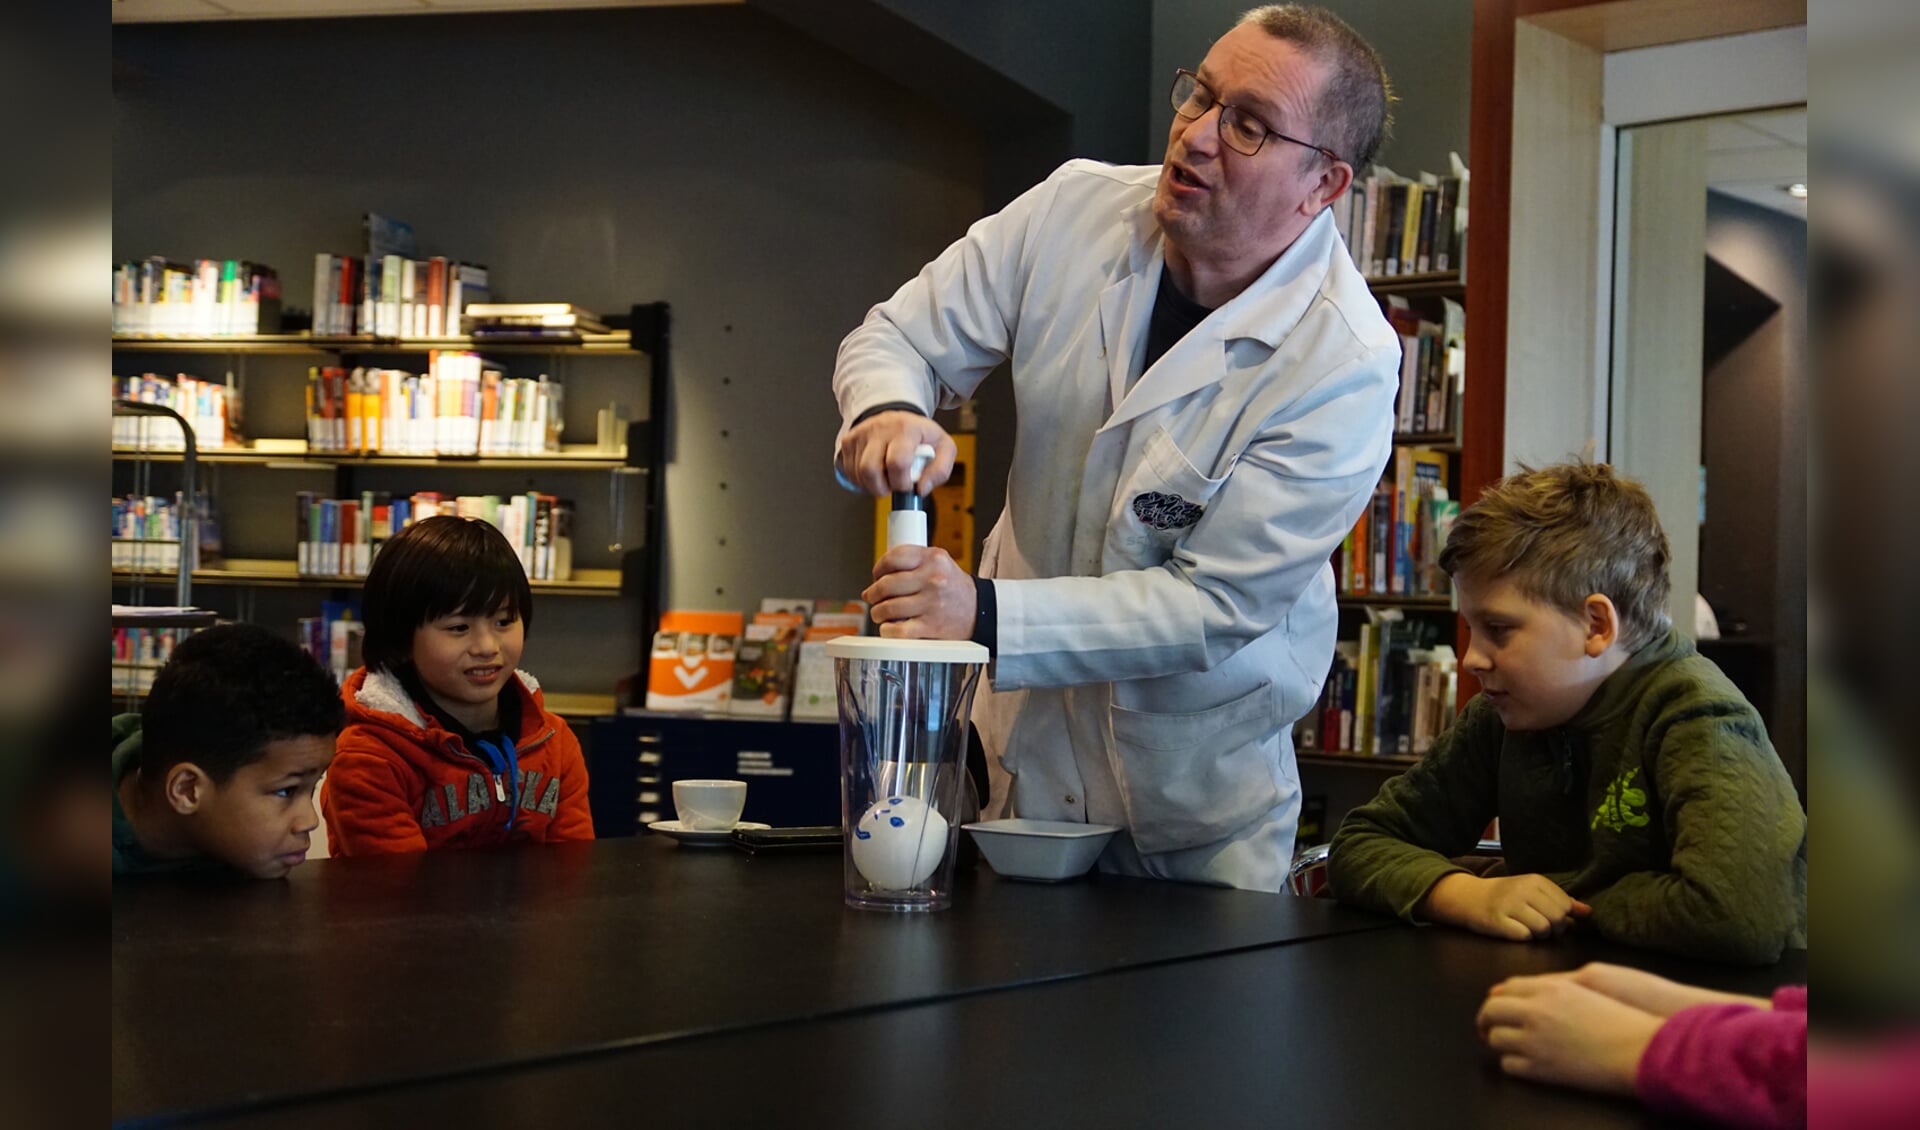 Mad Science houdt activiteiten voor kinderen die kennis willen maken met de wetenschap. 